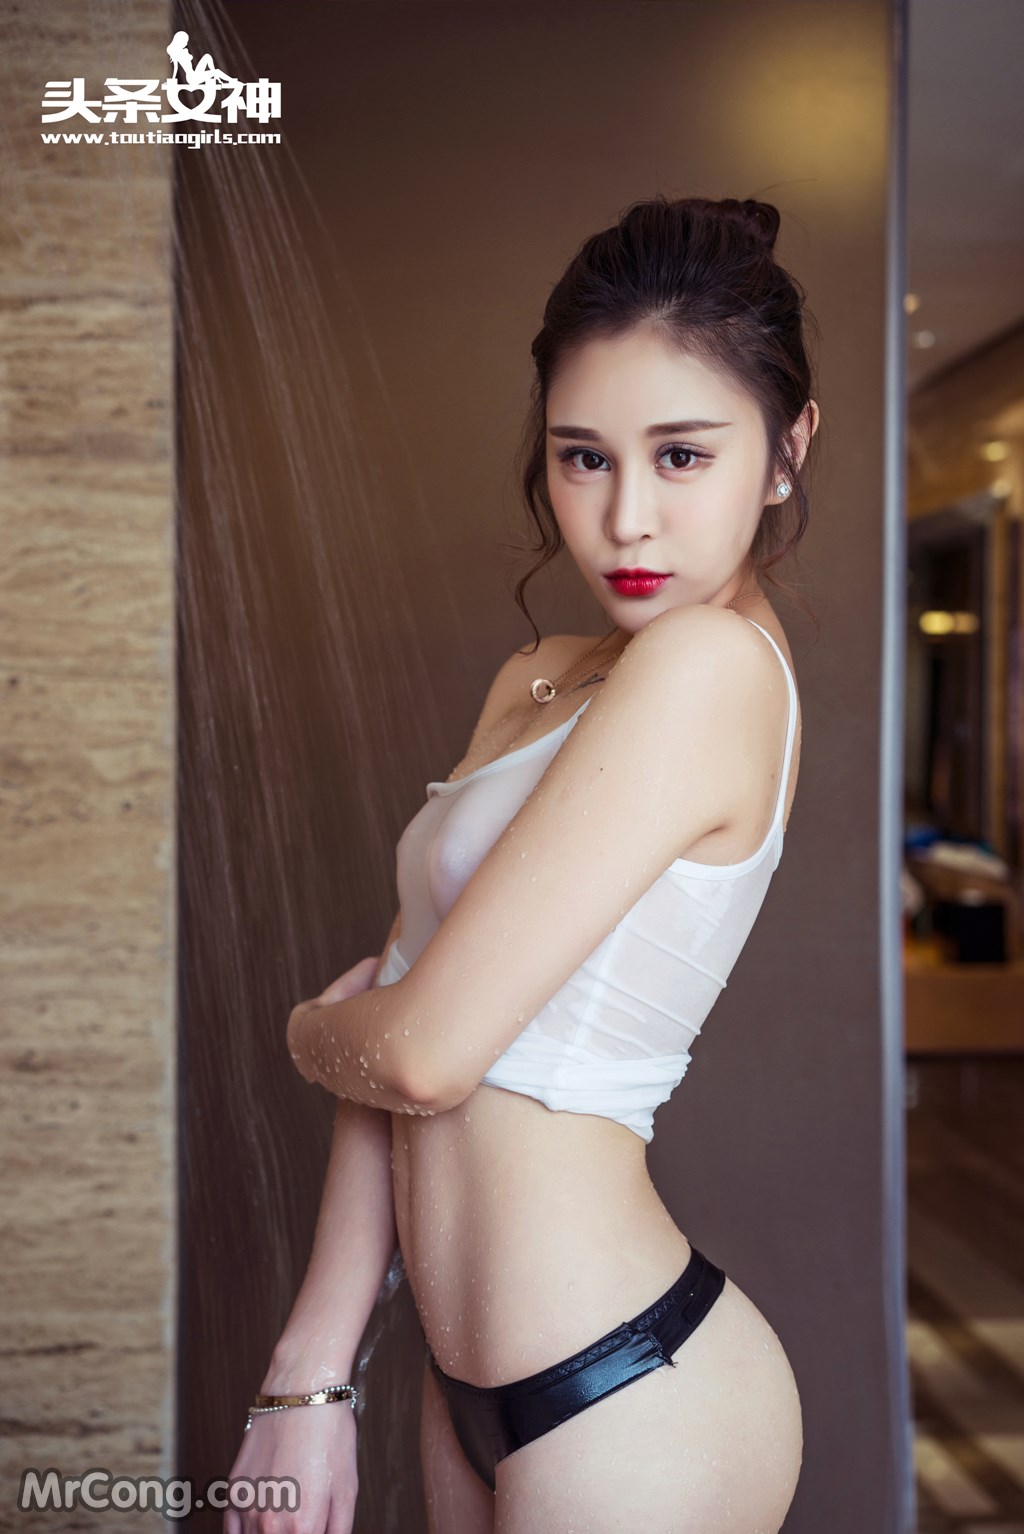 TouTiao 2016-06-25: Model Wang Yi Han (王一涵) (44 photos)